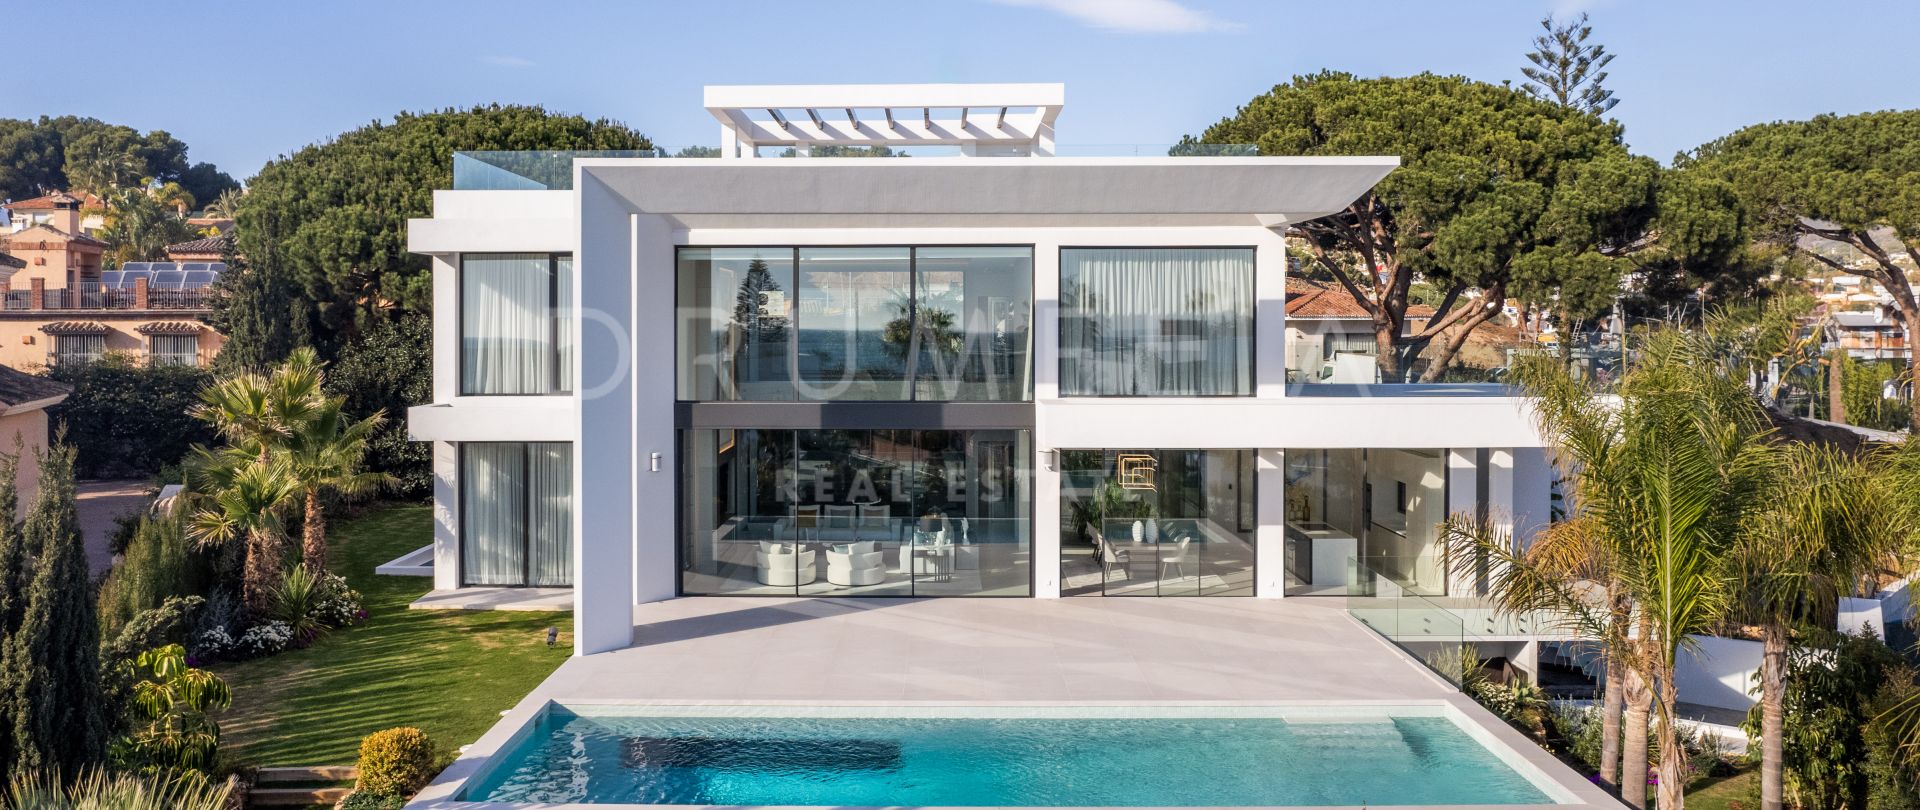 Villa de lujo a estrenar en ubicación privilegiada muy cerca de la playa en Elviria, Marbella